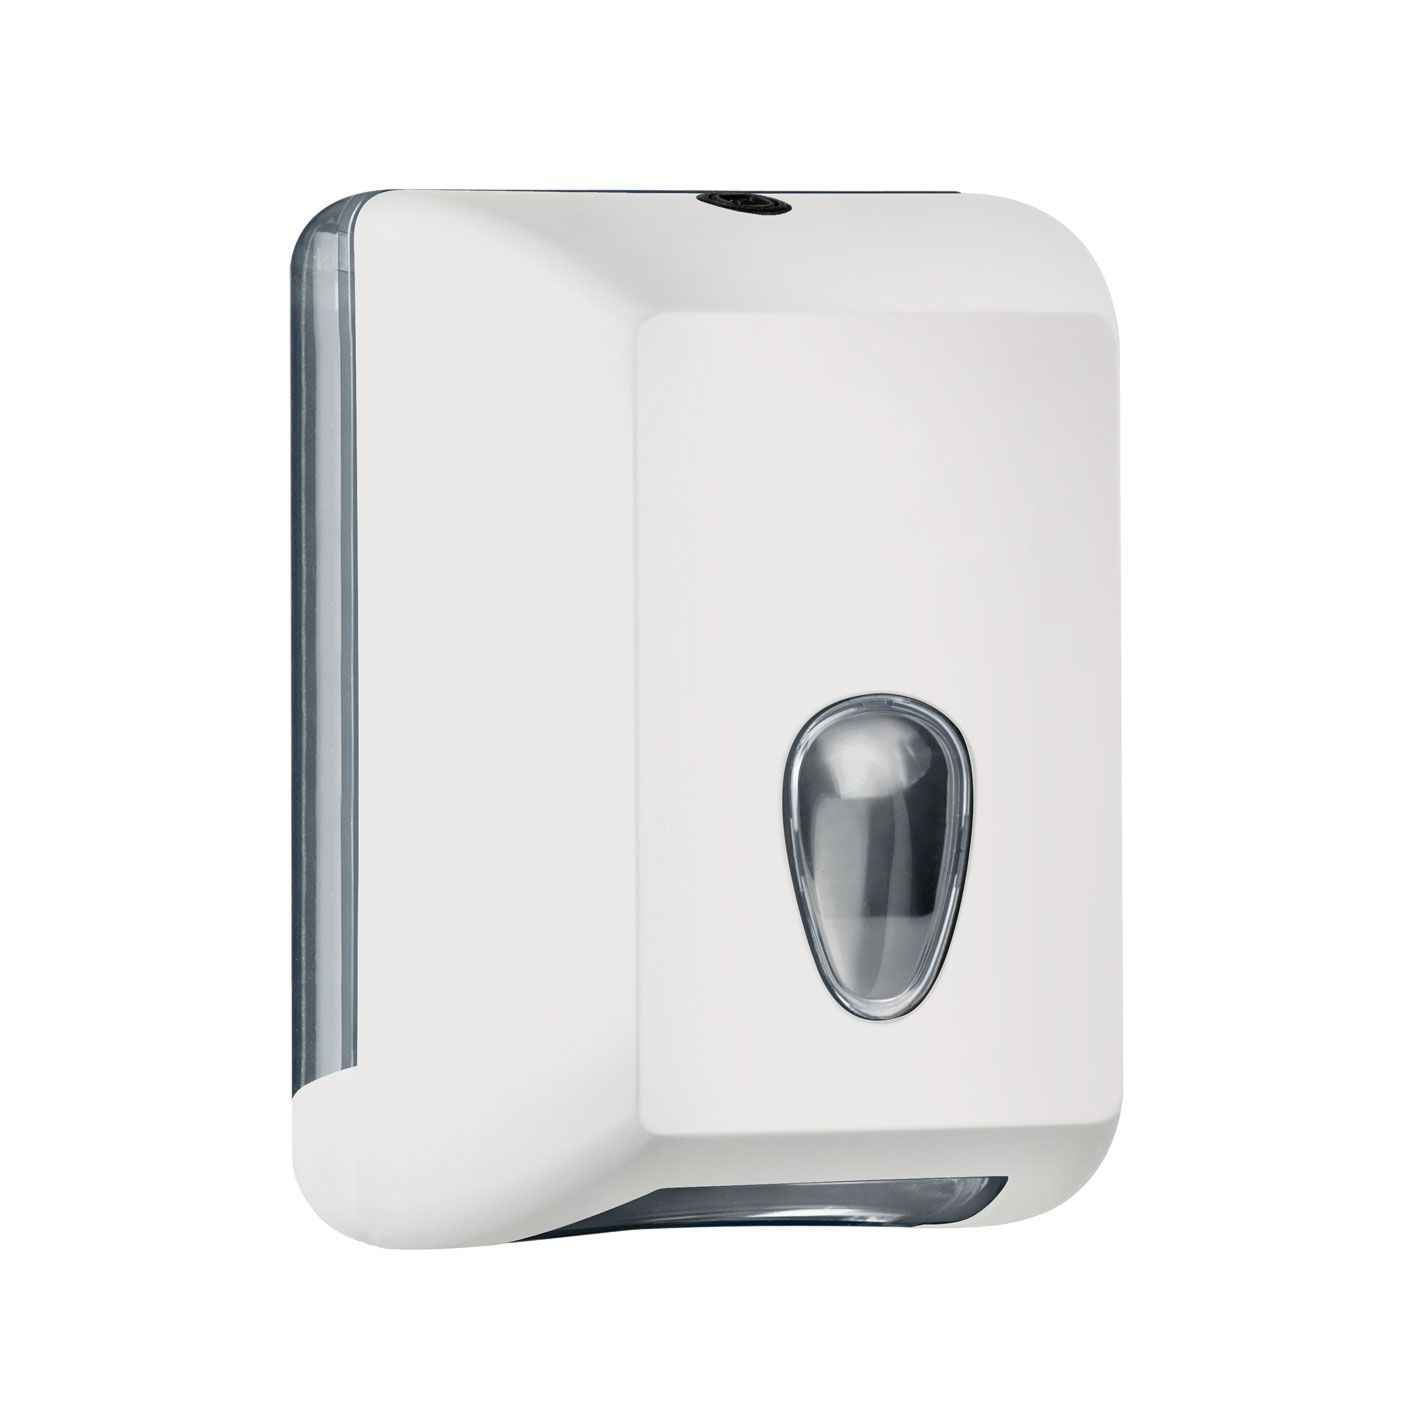 Podajalnik toaletnega papirja v lističih Marplast Soft Touch dozer bela